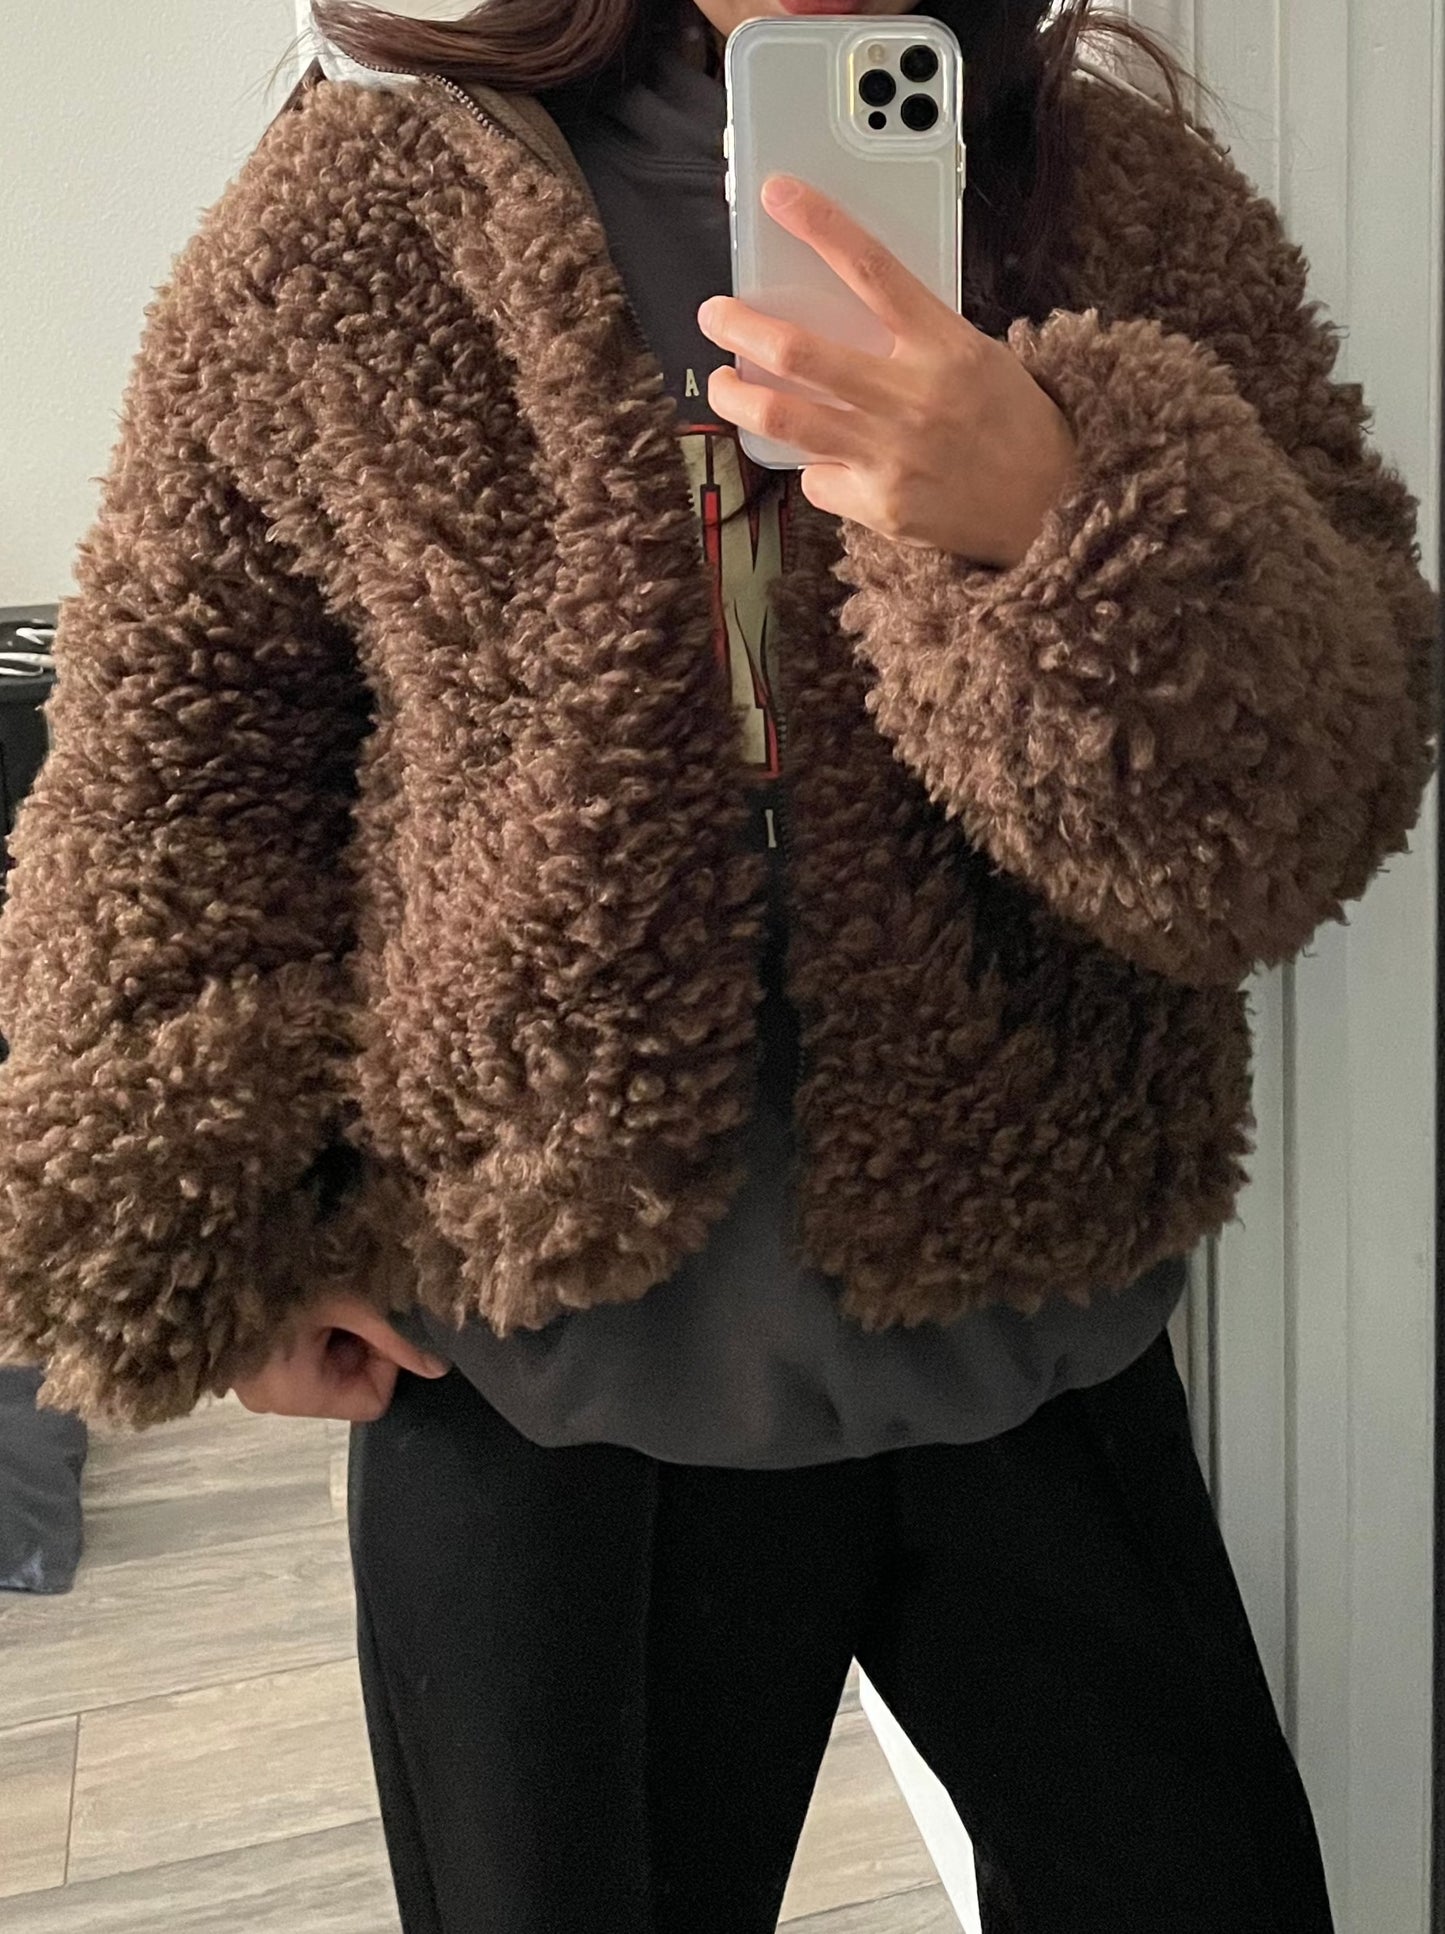 Cute&Unique♥ Brown Teddy Bear Jacket